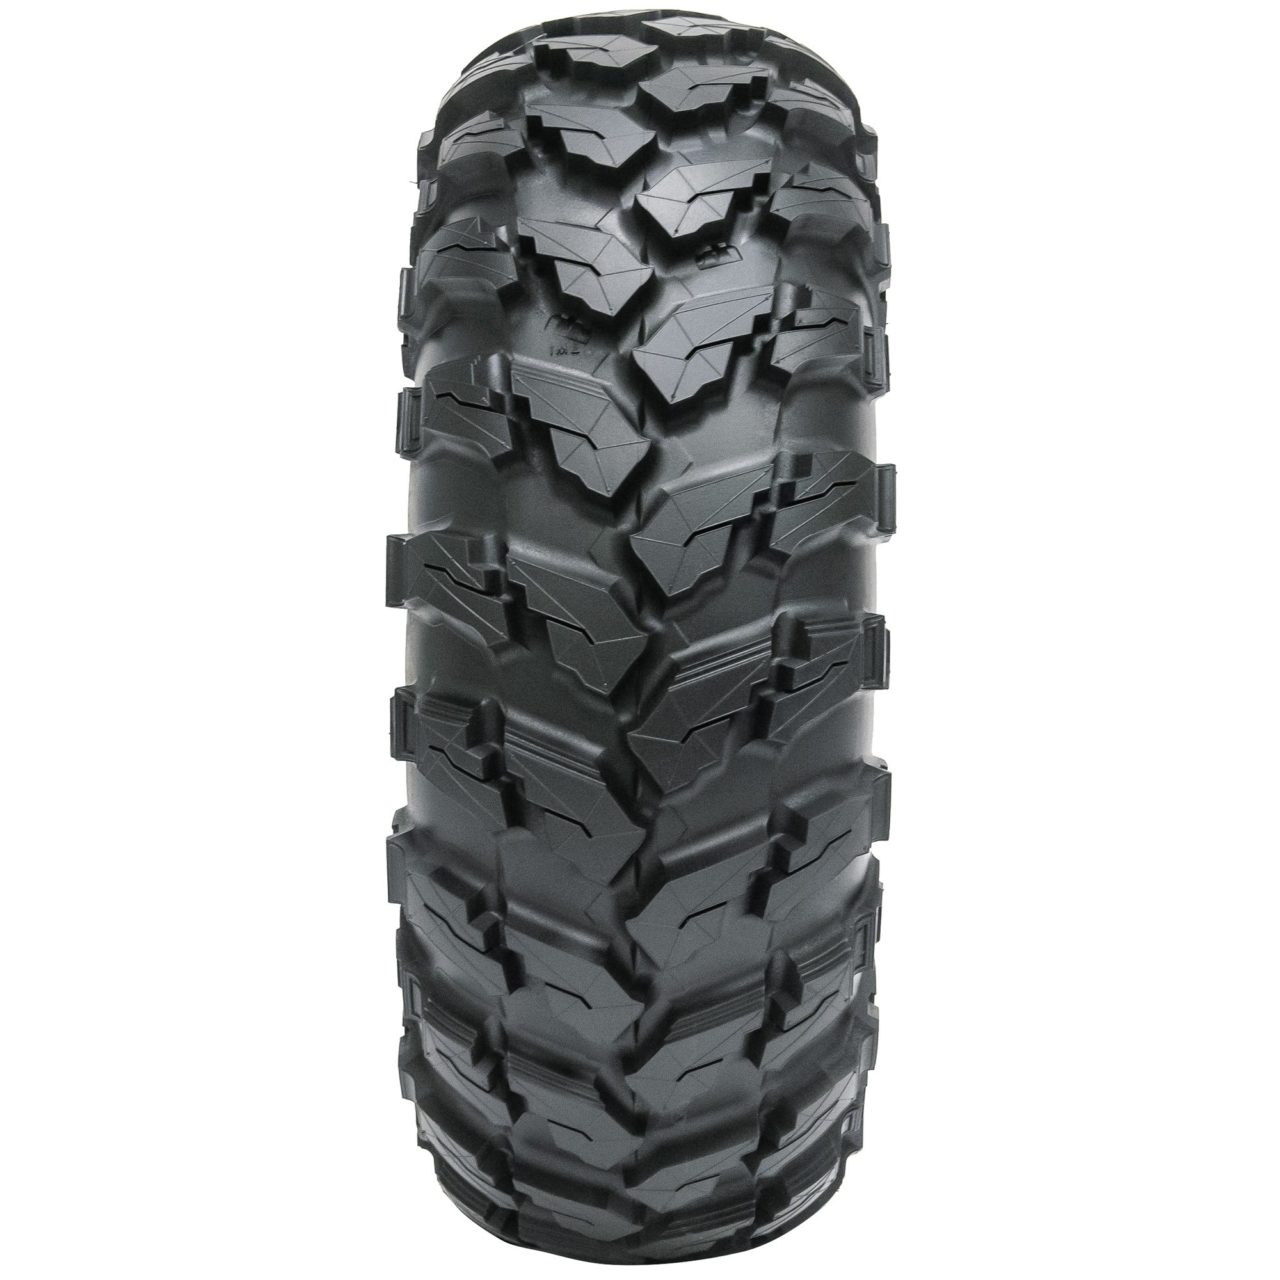 MU511 SxS tire product image